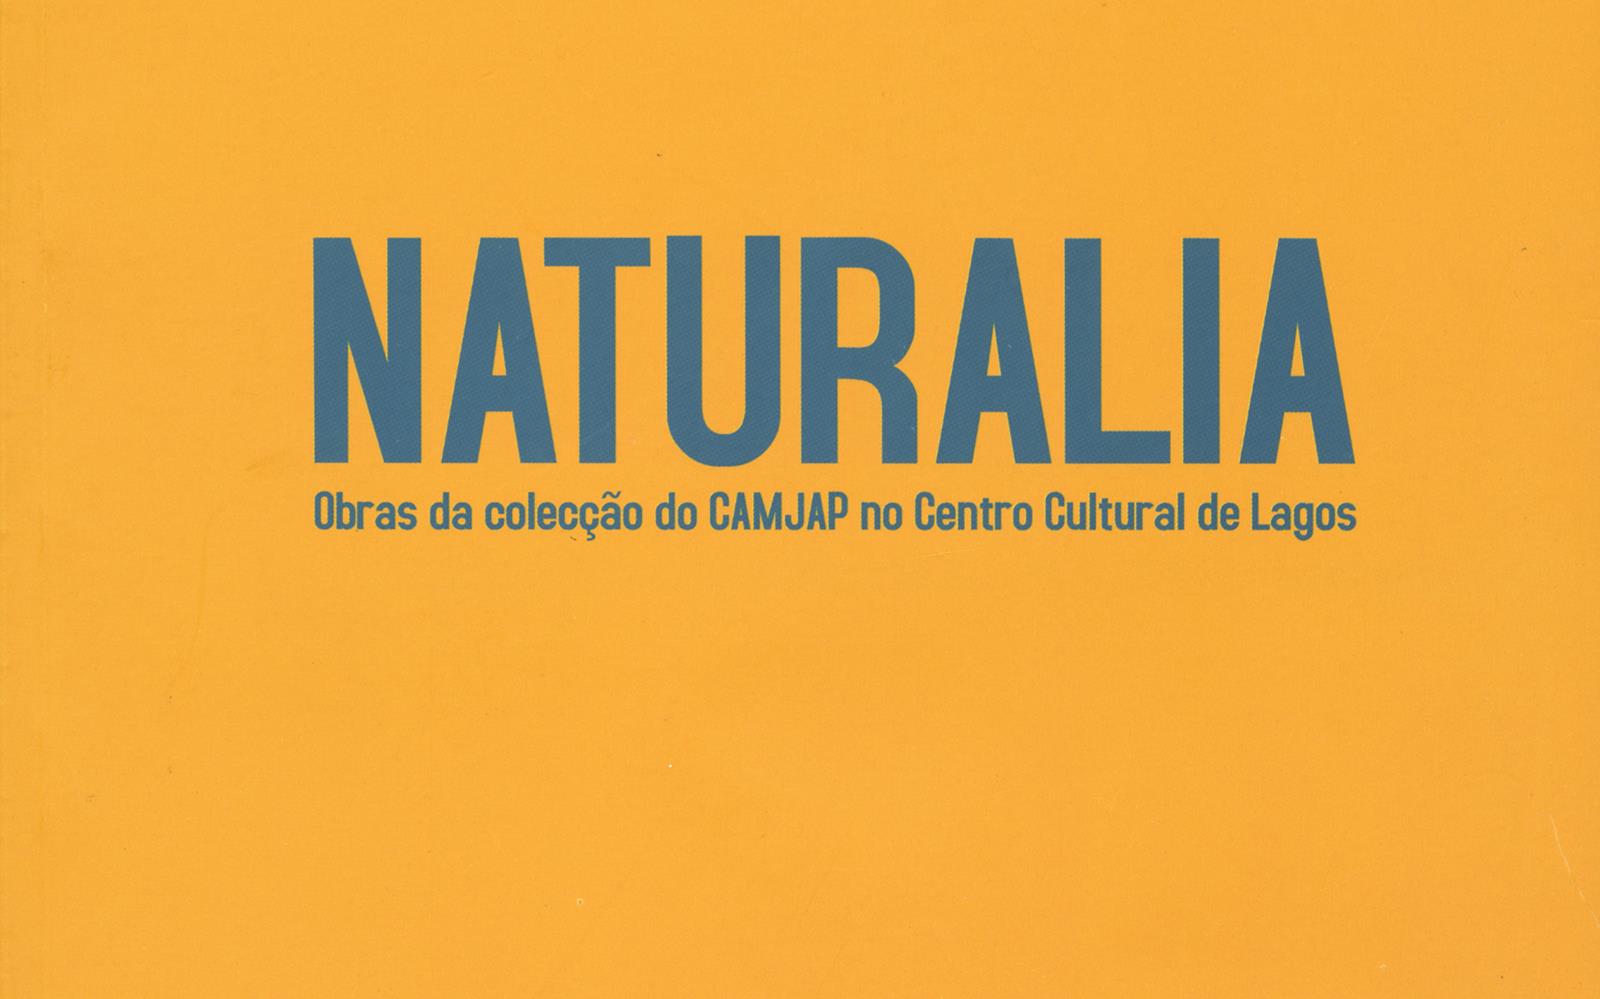 Naturalia. Obras da Colecção do CAMJAP no Centro Cultural de Lagos